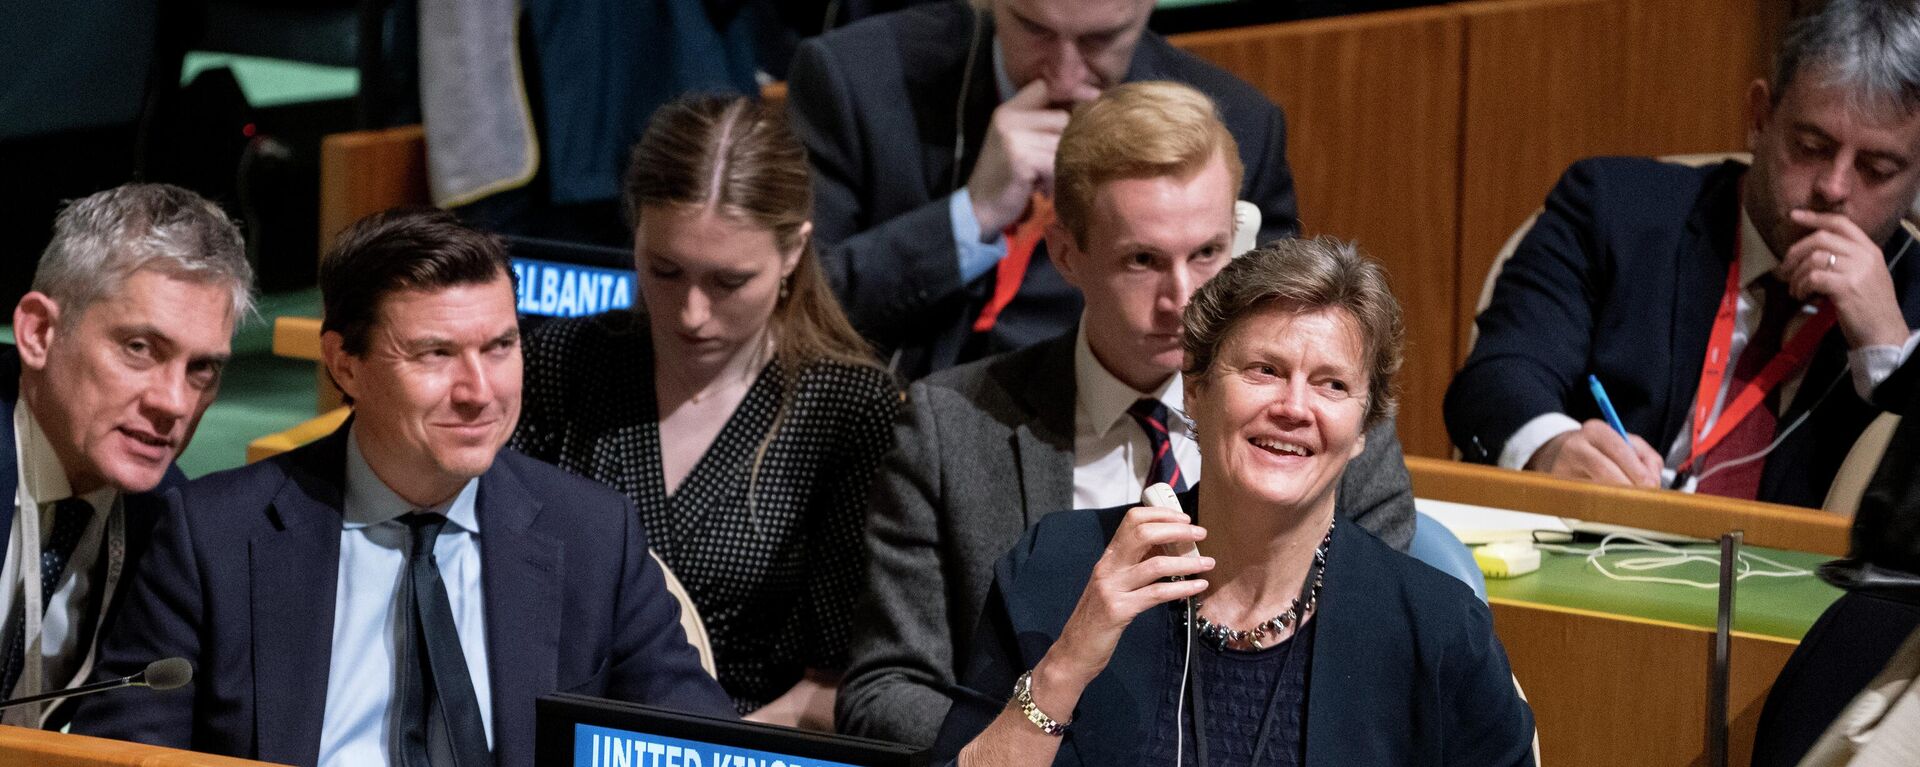 Barbara Woodward, representante permanente do Reino Unido nas Nações Unidas, sorri na mesa de sua delegação após cumprimentar Nicolas de Rivière, representante francês, durante reunião da Assembleia Geral das Nações Unidas (AGNU), em 7 de abril de 2022, na sede da Organização das Nações Unidas (ONU). - Sputnik Brasil, 1920, 07.04.2022